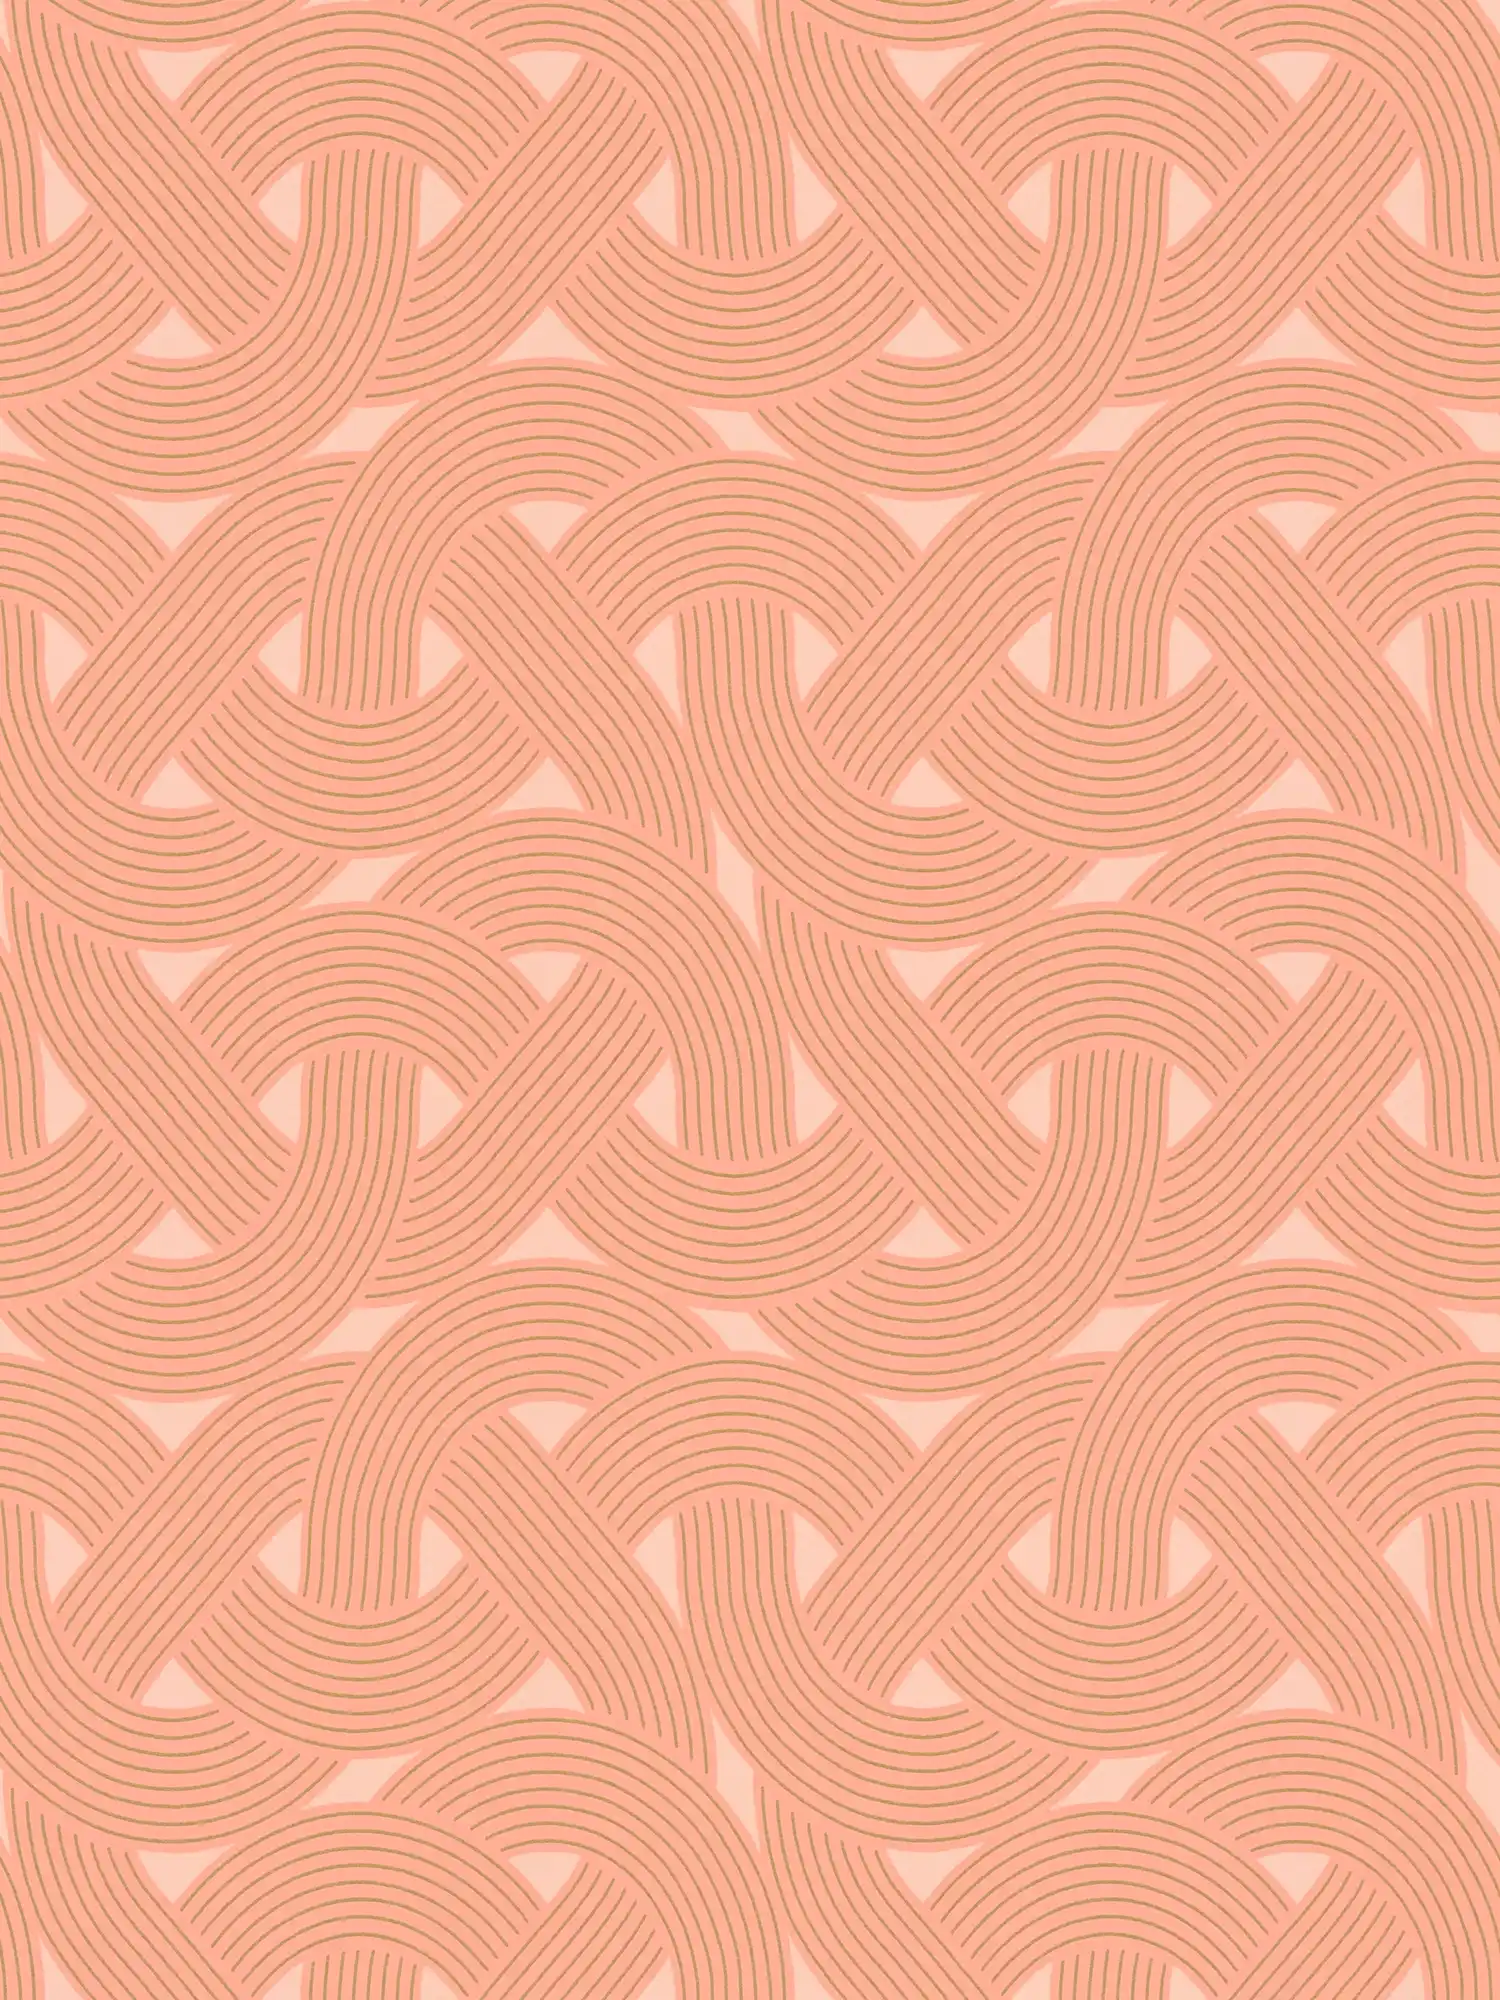 Art deco style graphic line pattern - orange, copper
